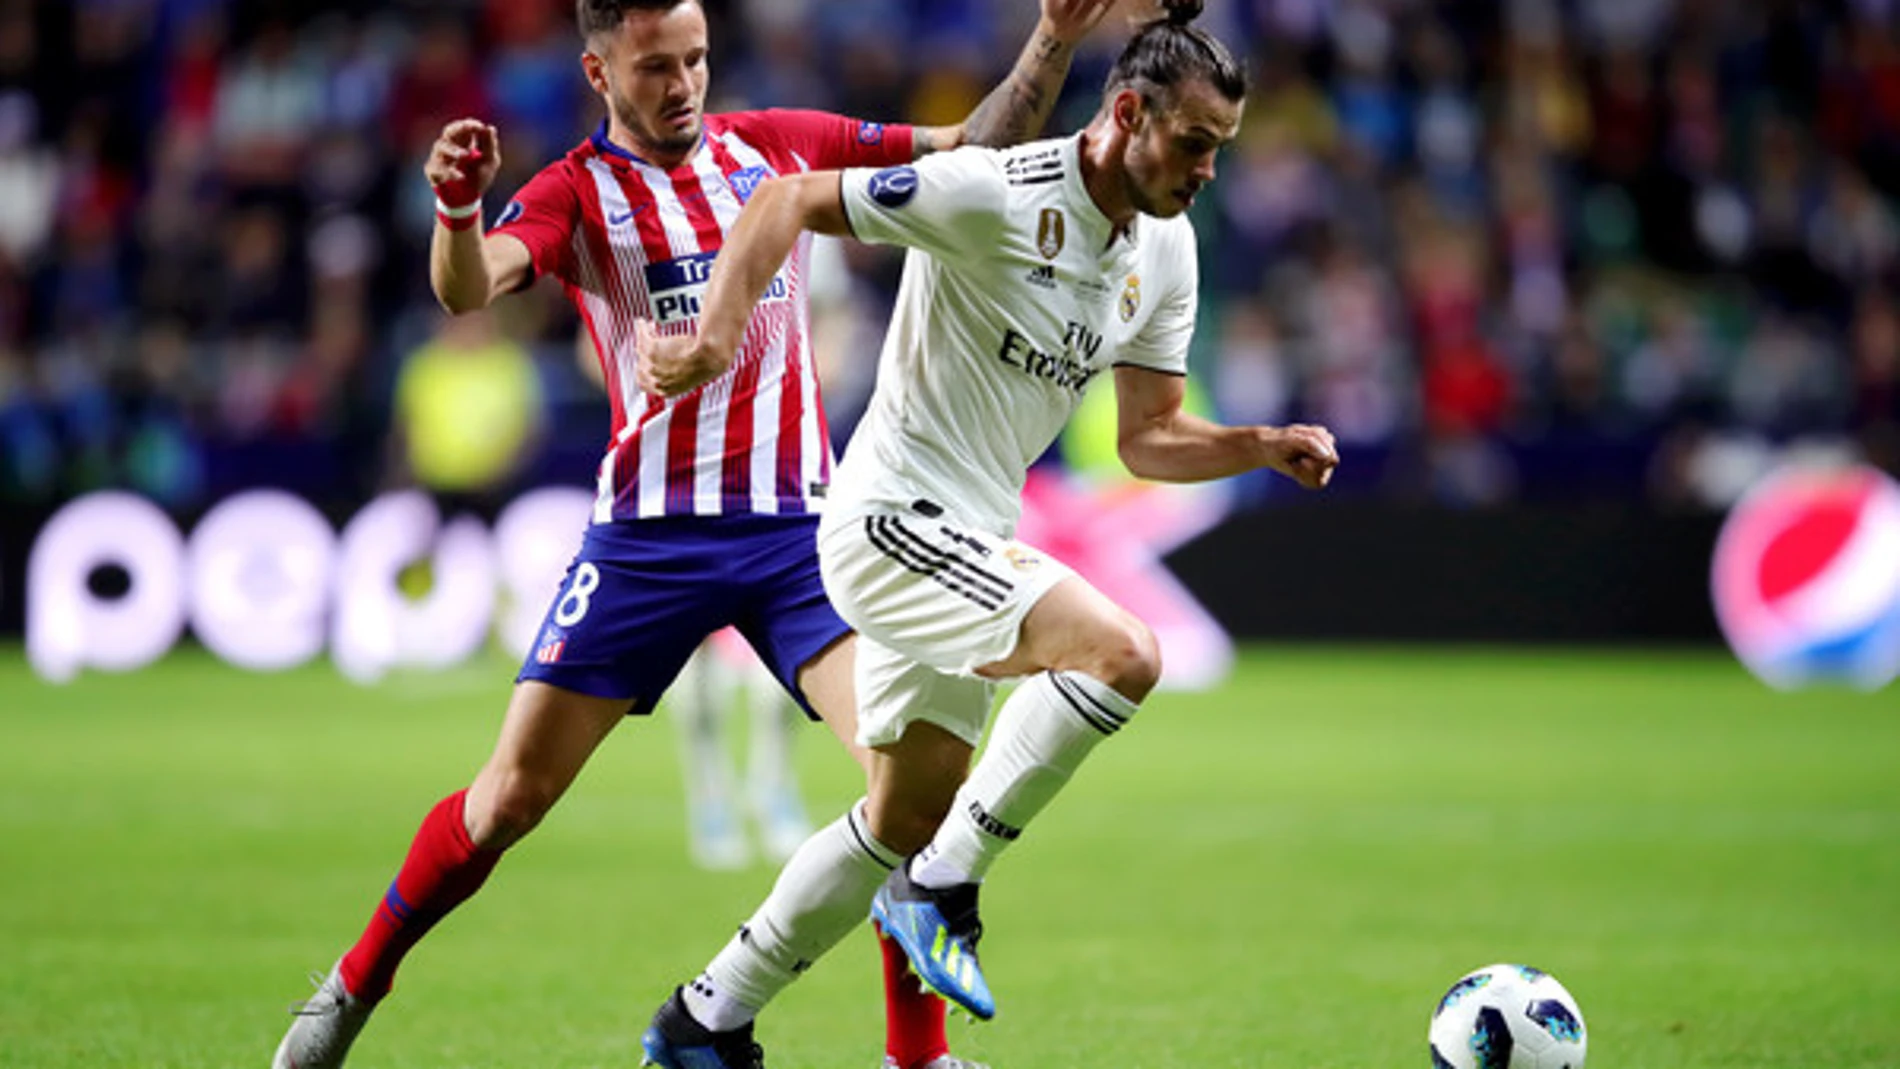 Pipíldoras: El agente de Bale se lleva a Saúl